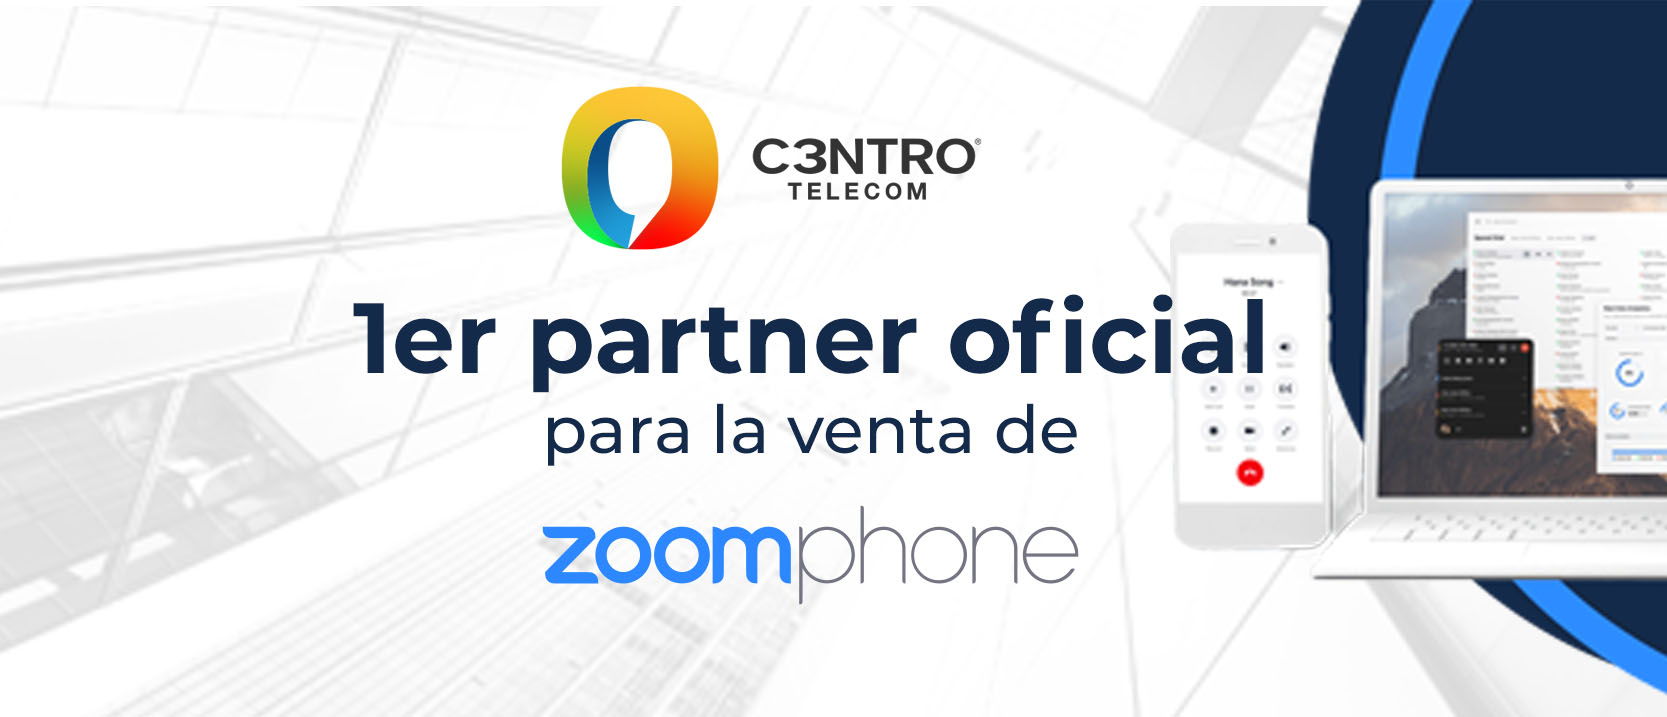 C3ntro-Partner-Zoom-Phone